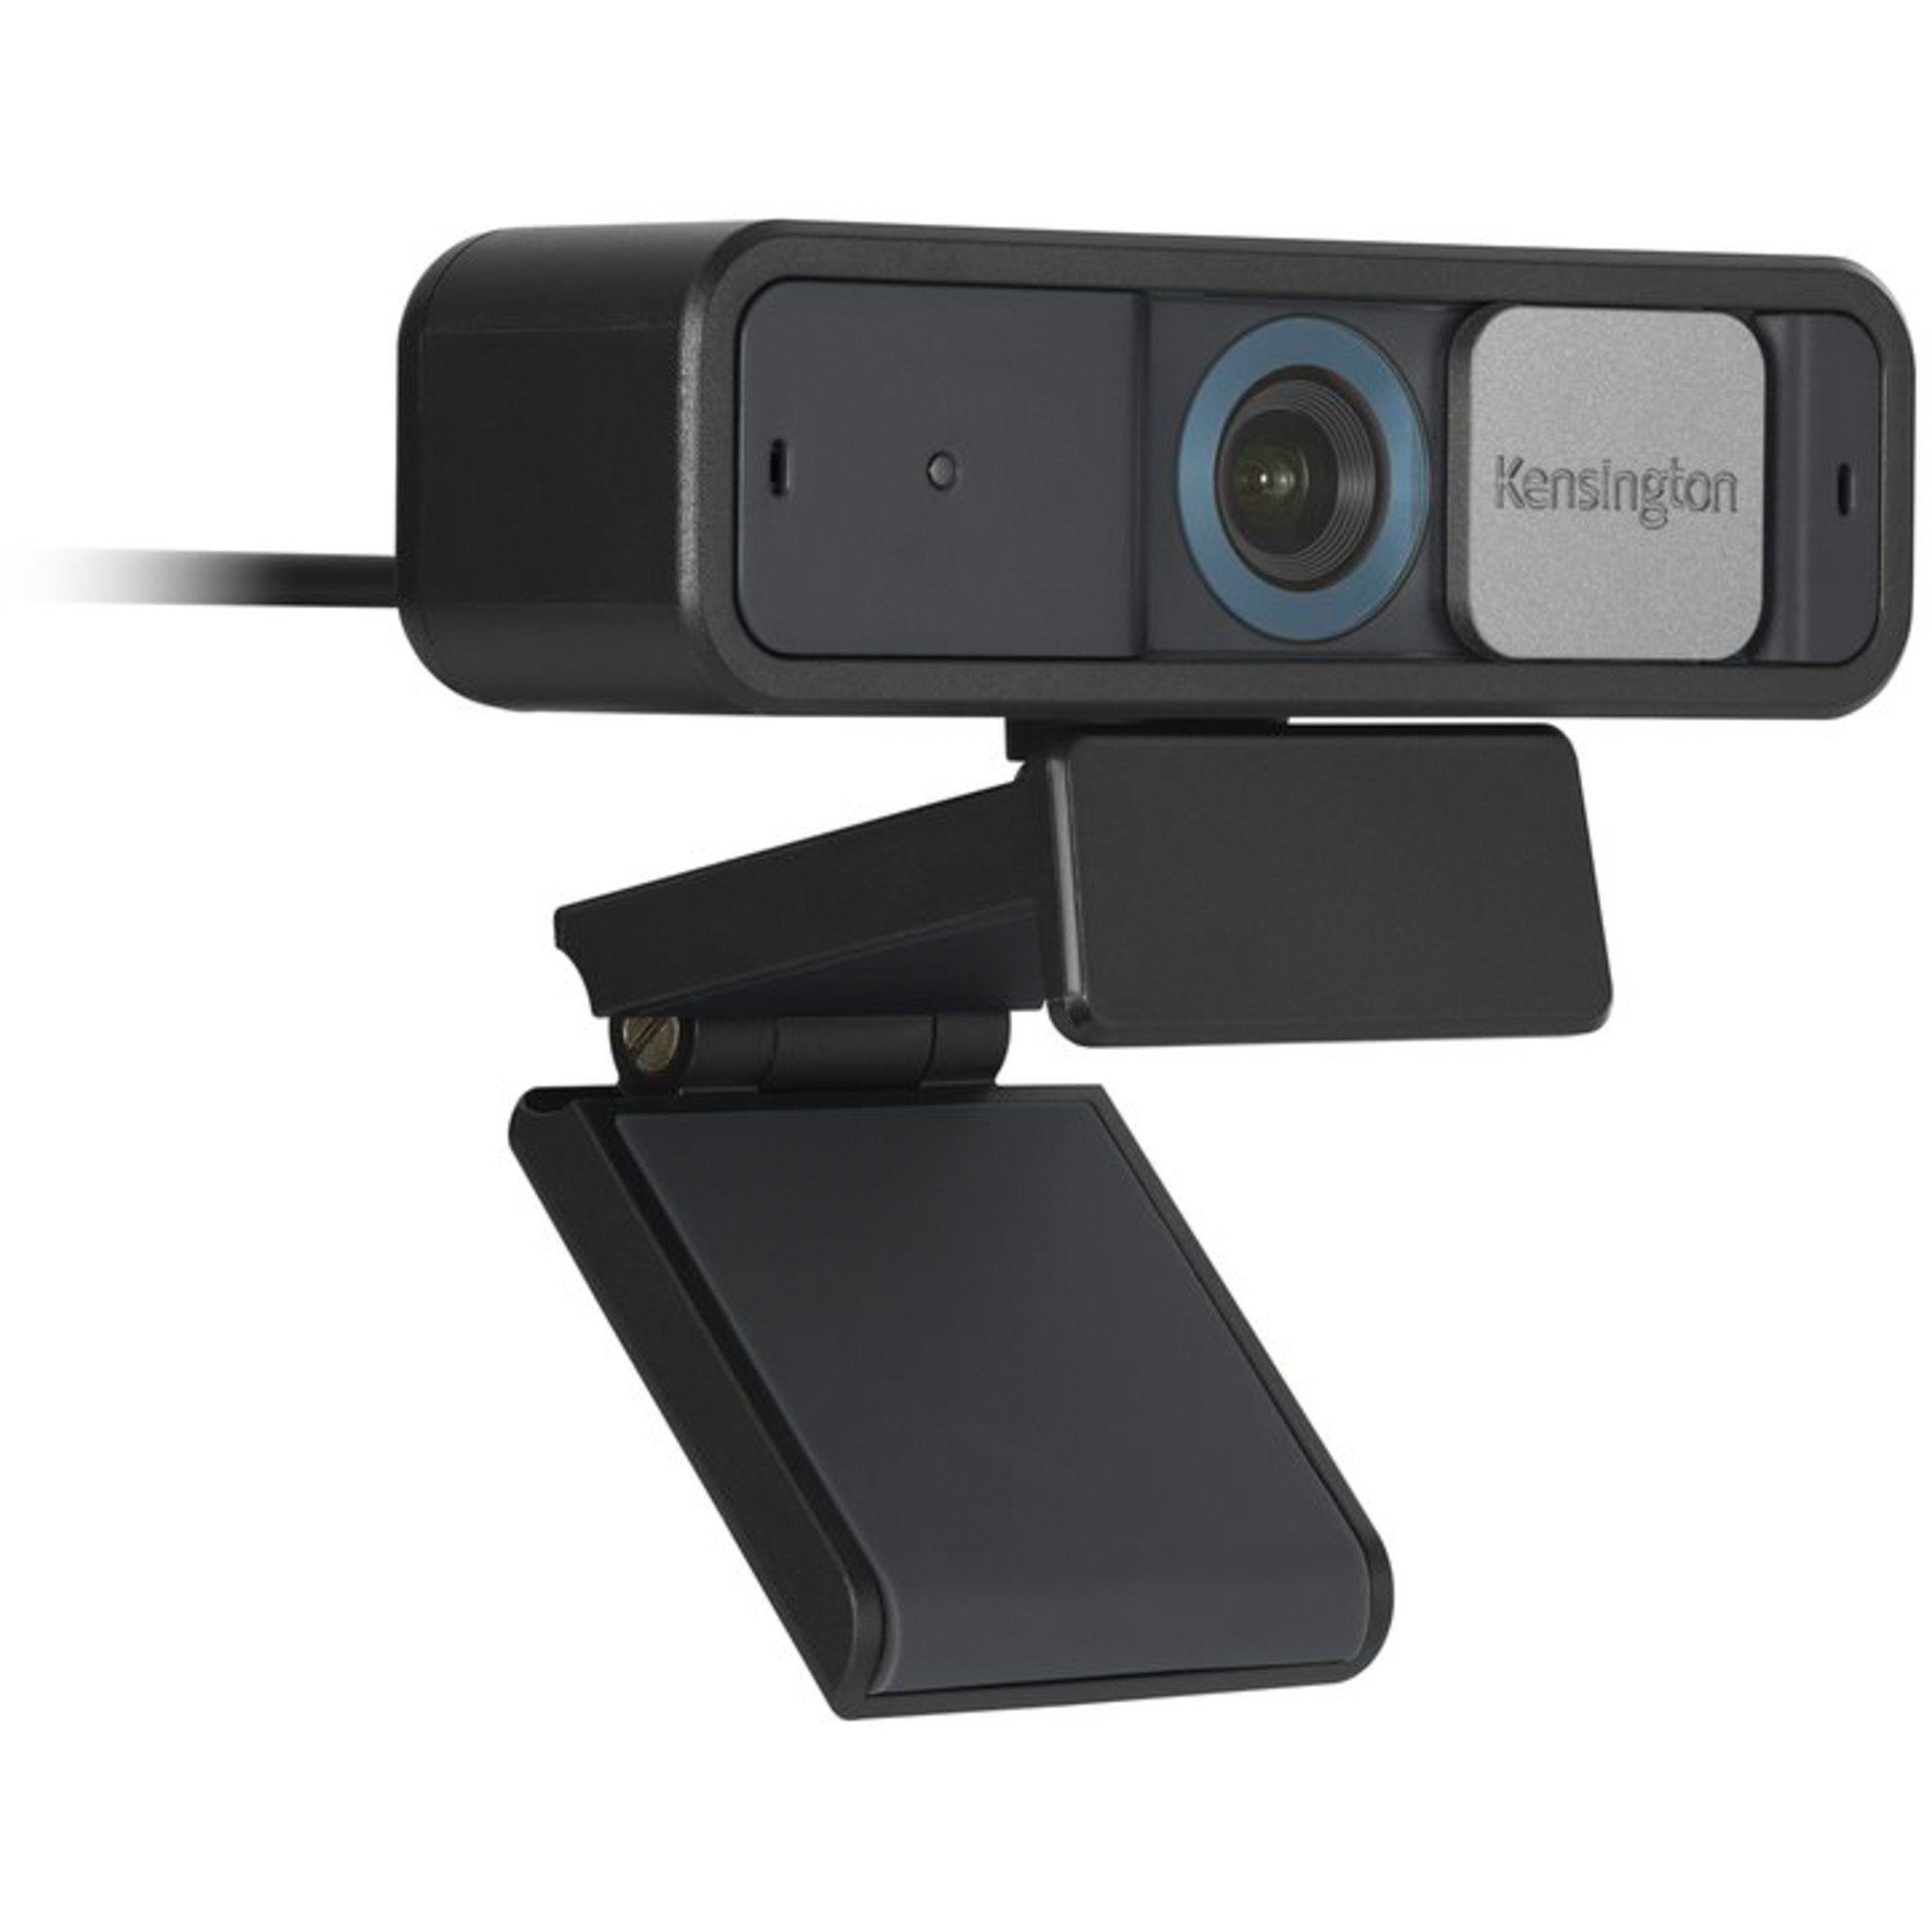 Focus, Auto KENSINGTON Webcam 1080p Pro Kensington W2050 Webcam